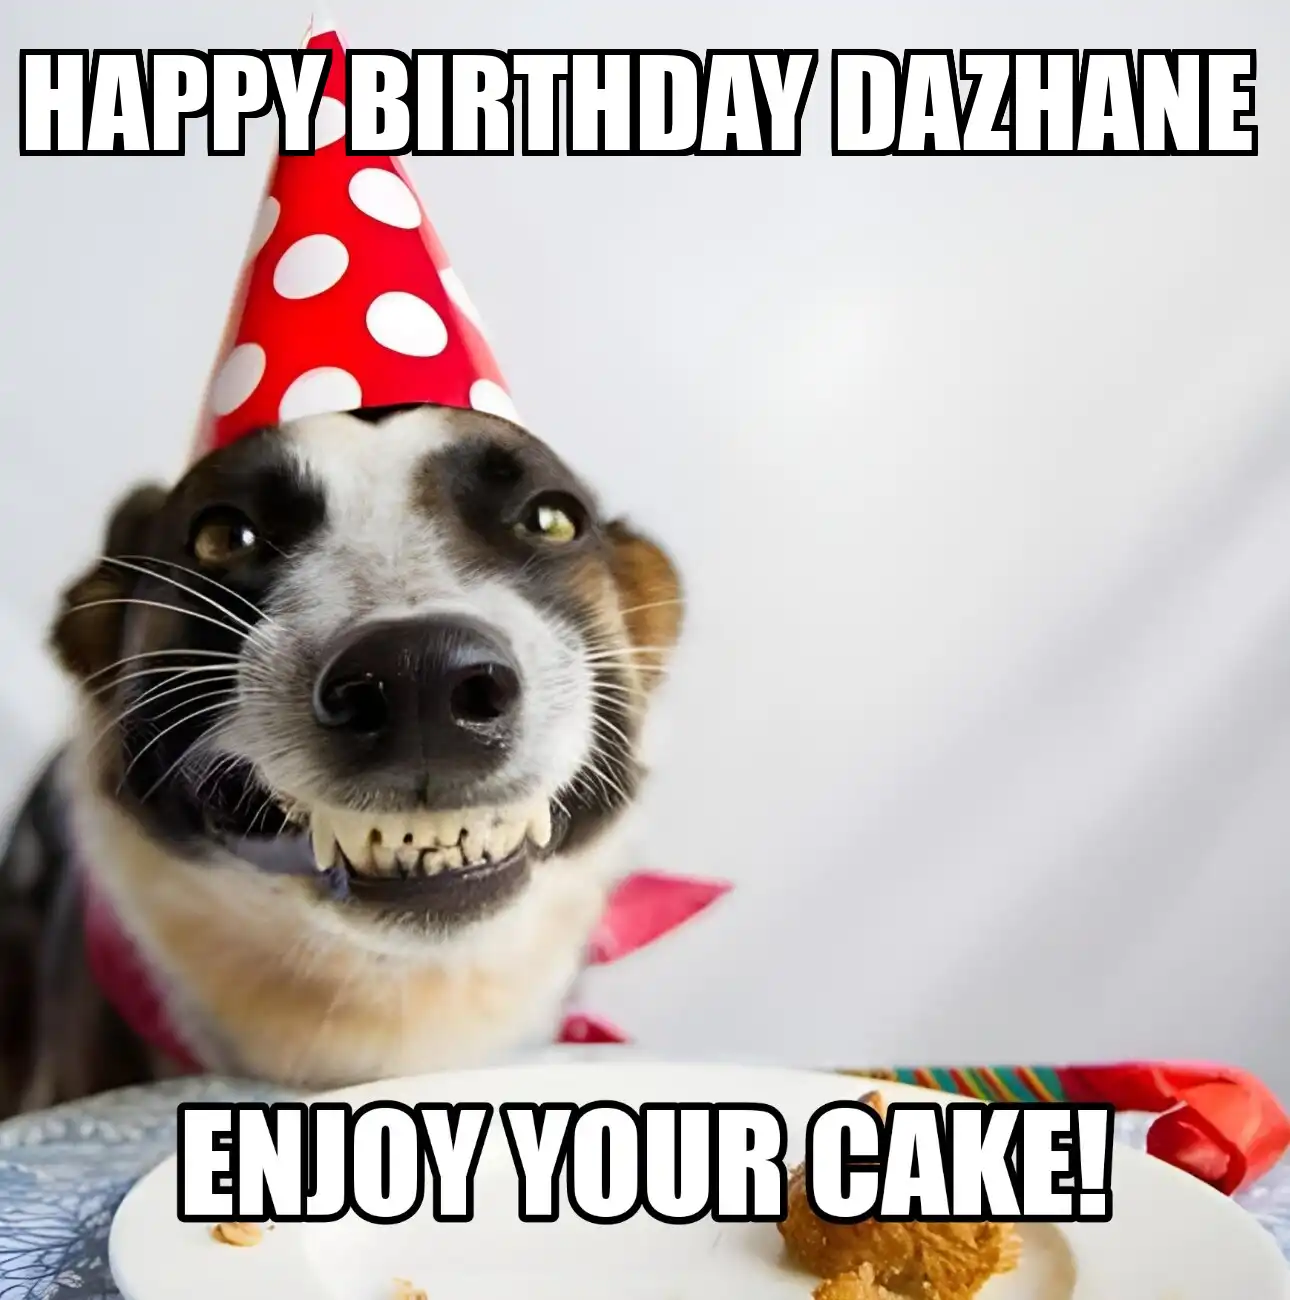 Happy Birthday Dazhane Enjoy Your Cake Dog Meme